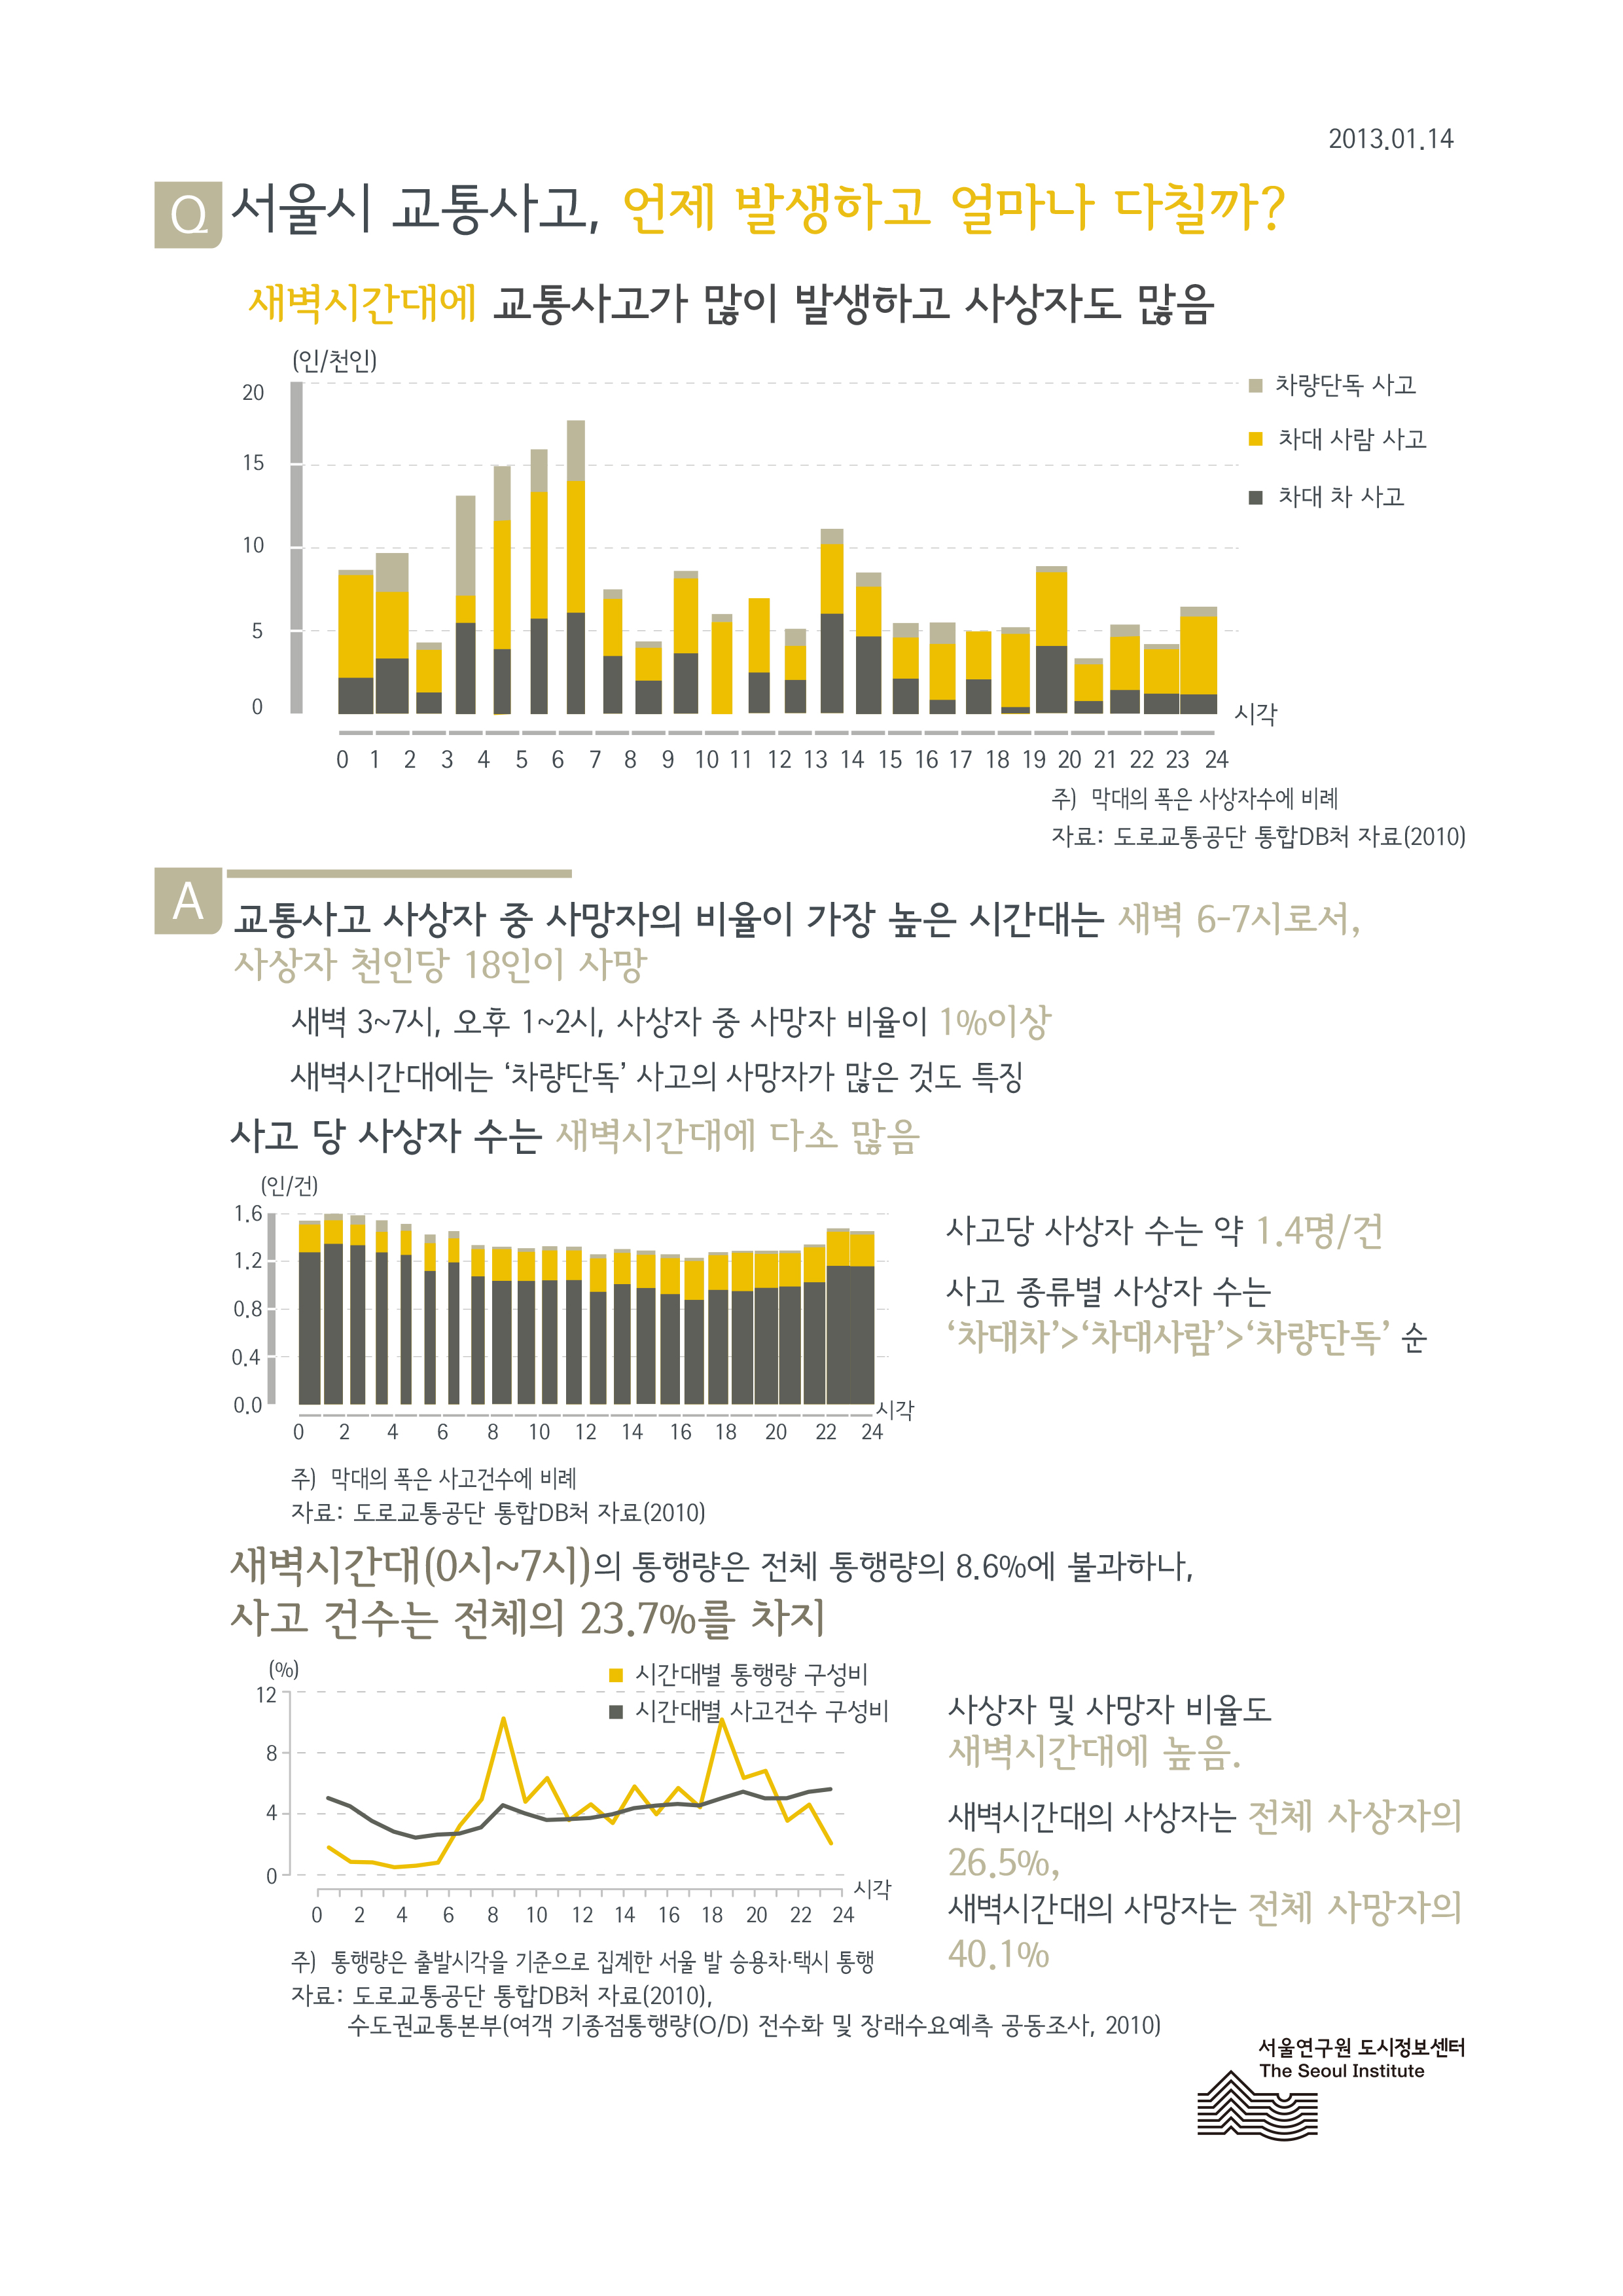 서울시 교통사고, 언제 발생하고 얼마나 다칠까? 서울인포그래픽스 제16호 2013년 1월 14일 새벽시간대에 교통사고가 많이 발생하고 사상자도 많음으로 정리될 수 있습니다. 인포그래픽으로 제공되는 그래픽은 하단에 표로 자세히 제공됩니다.